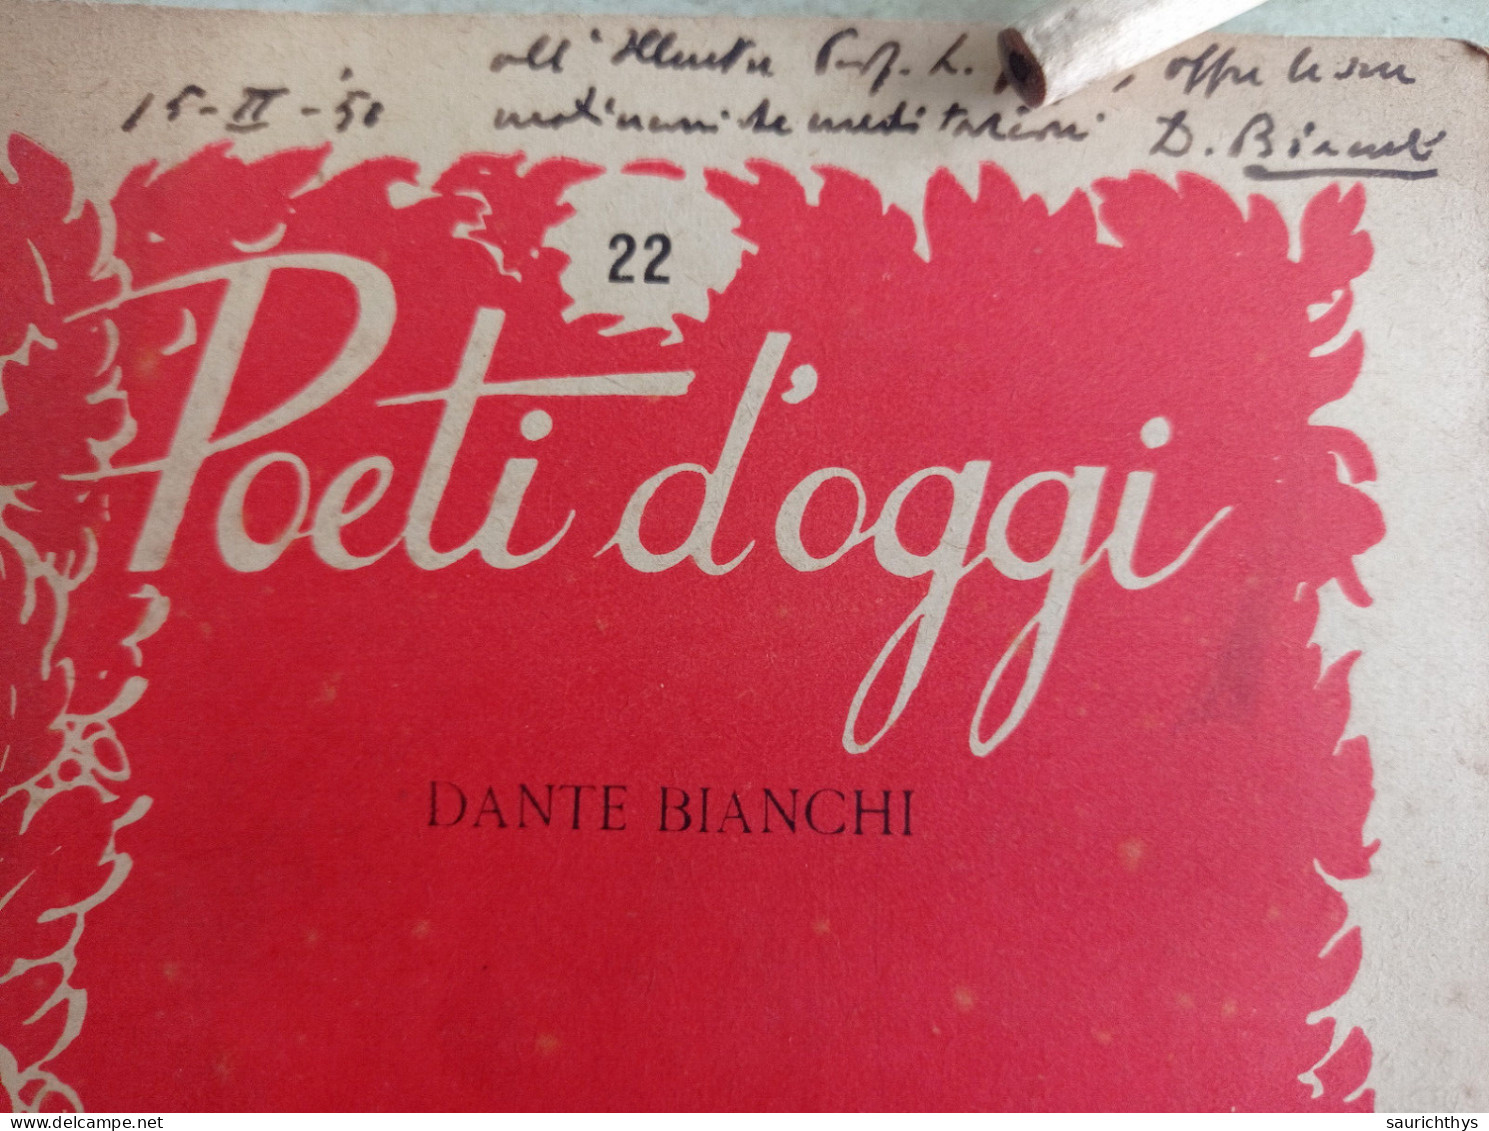 Poeti D'oggi Stralci Gastaldi Editore 1949 Autografo Di Dante Bianchi A Noto Accademico - Poëzie